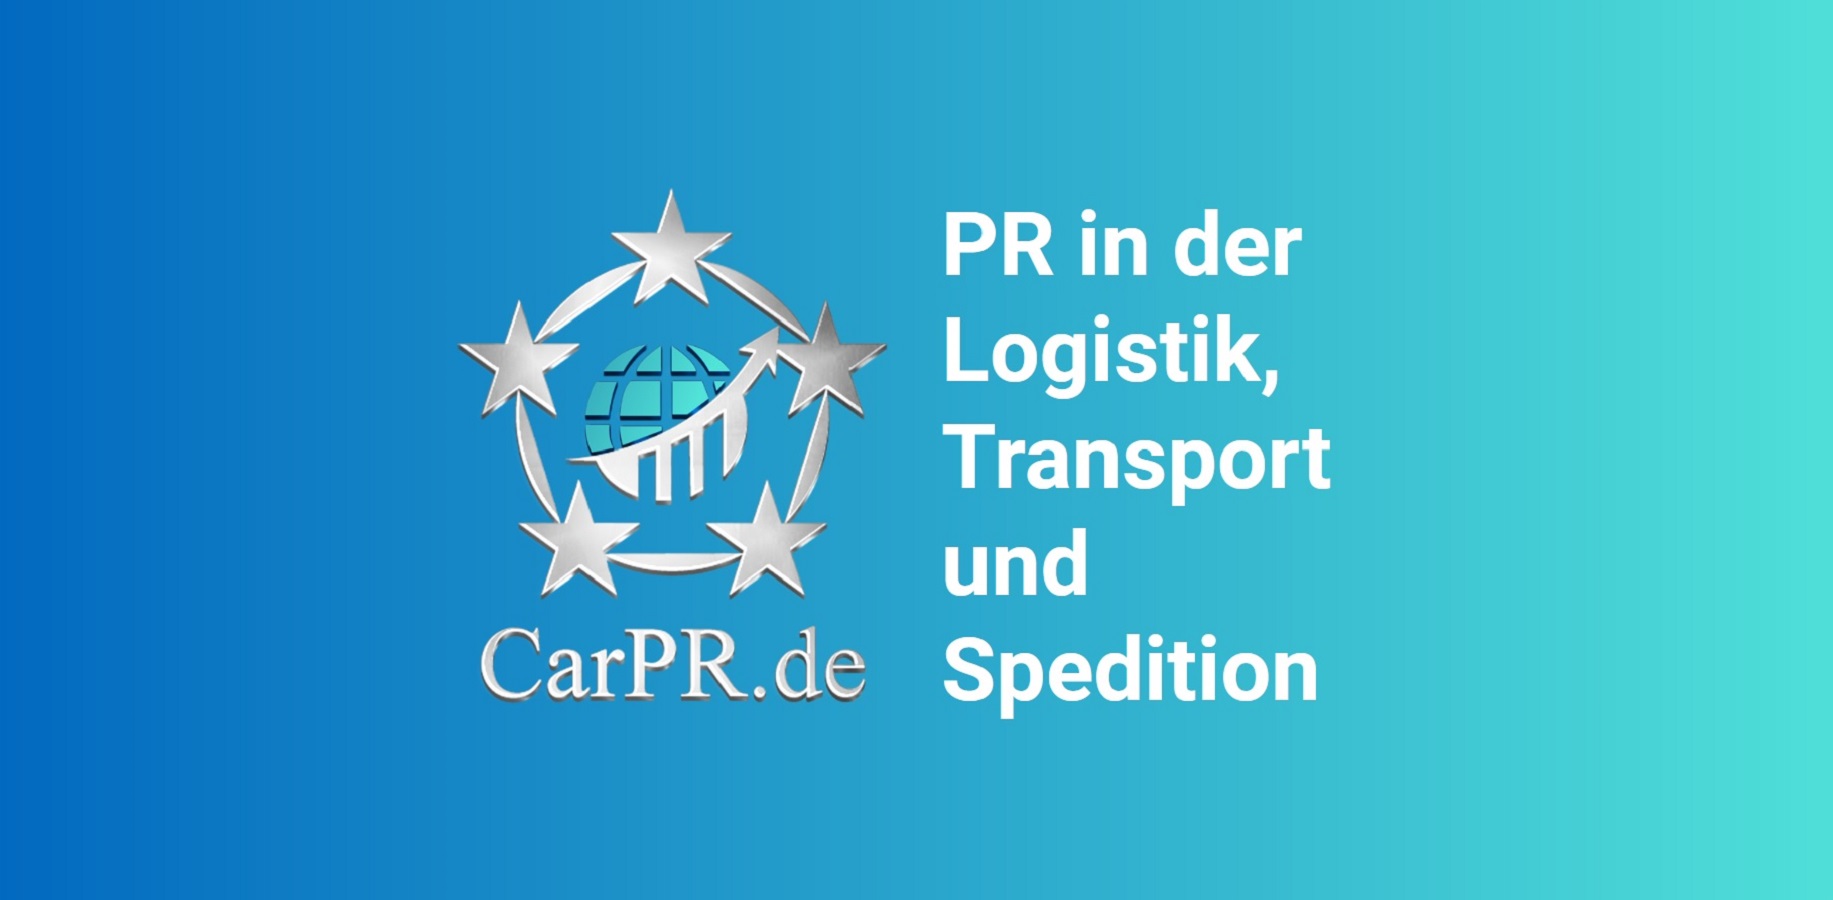 Transport Marketing: Agentur für Neukundengewinnung - CarPR.de